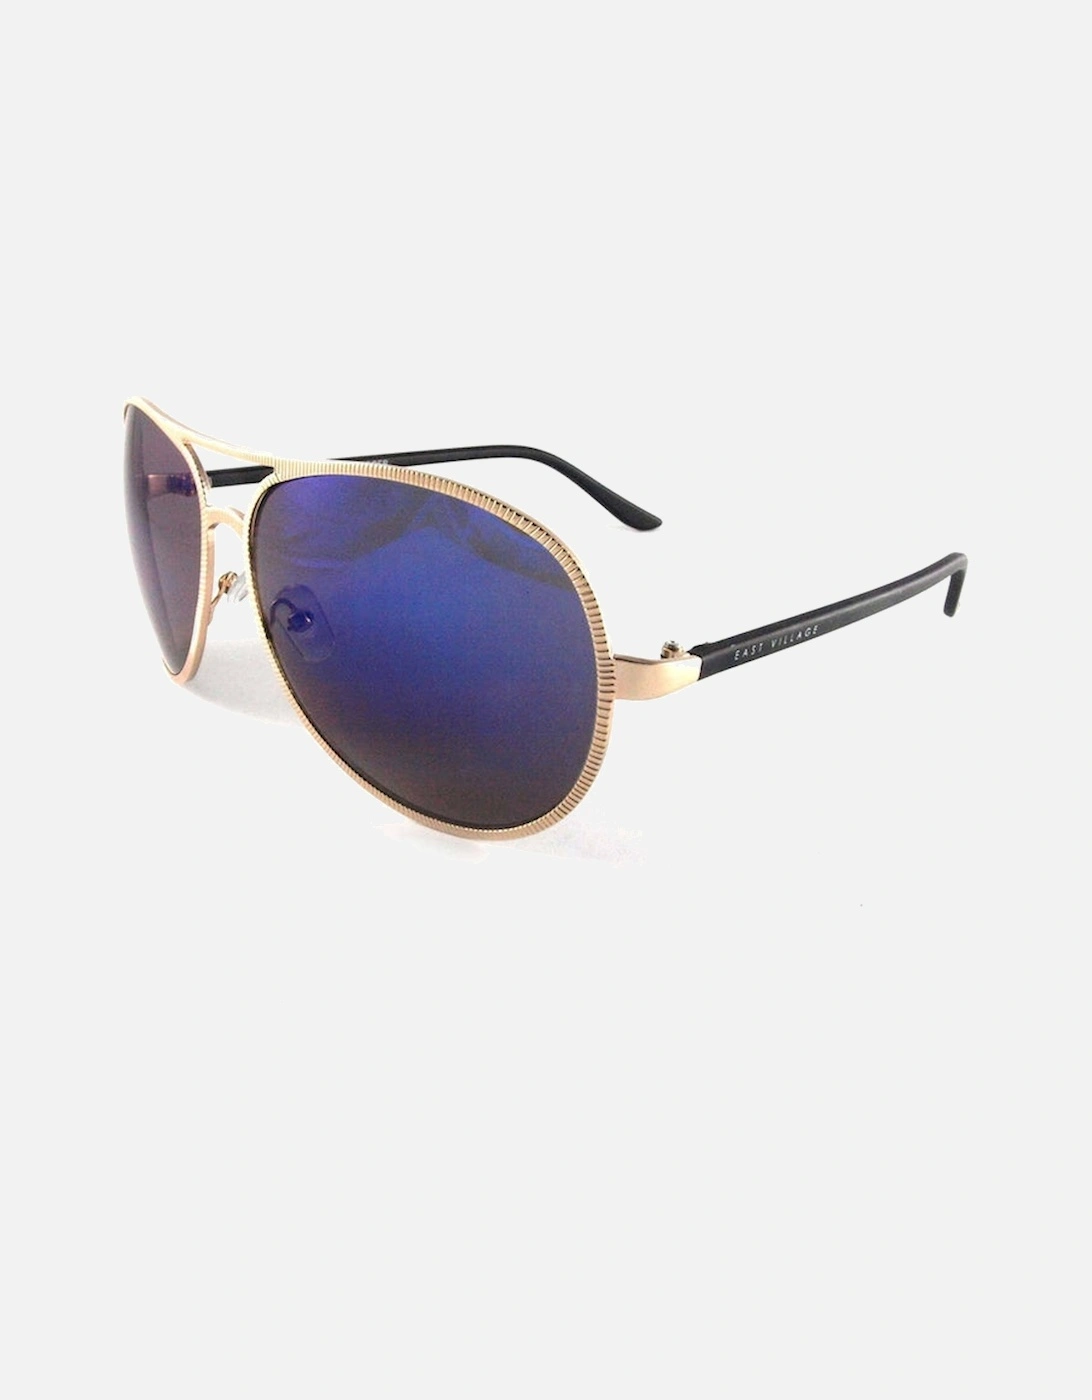 Beveled Edge 'Jagger' Aviator Sunglasses in Light Gold & Black, 2 of 1